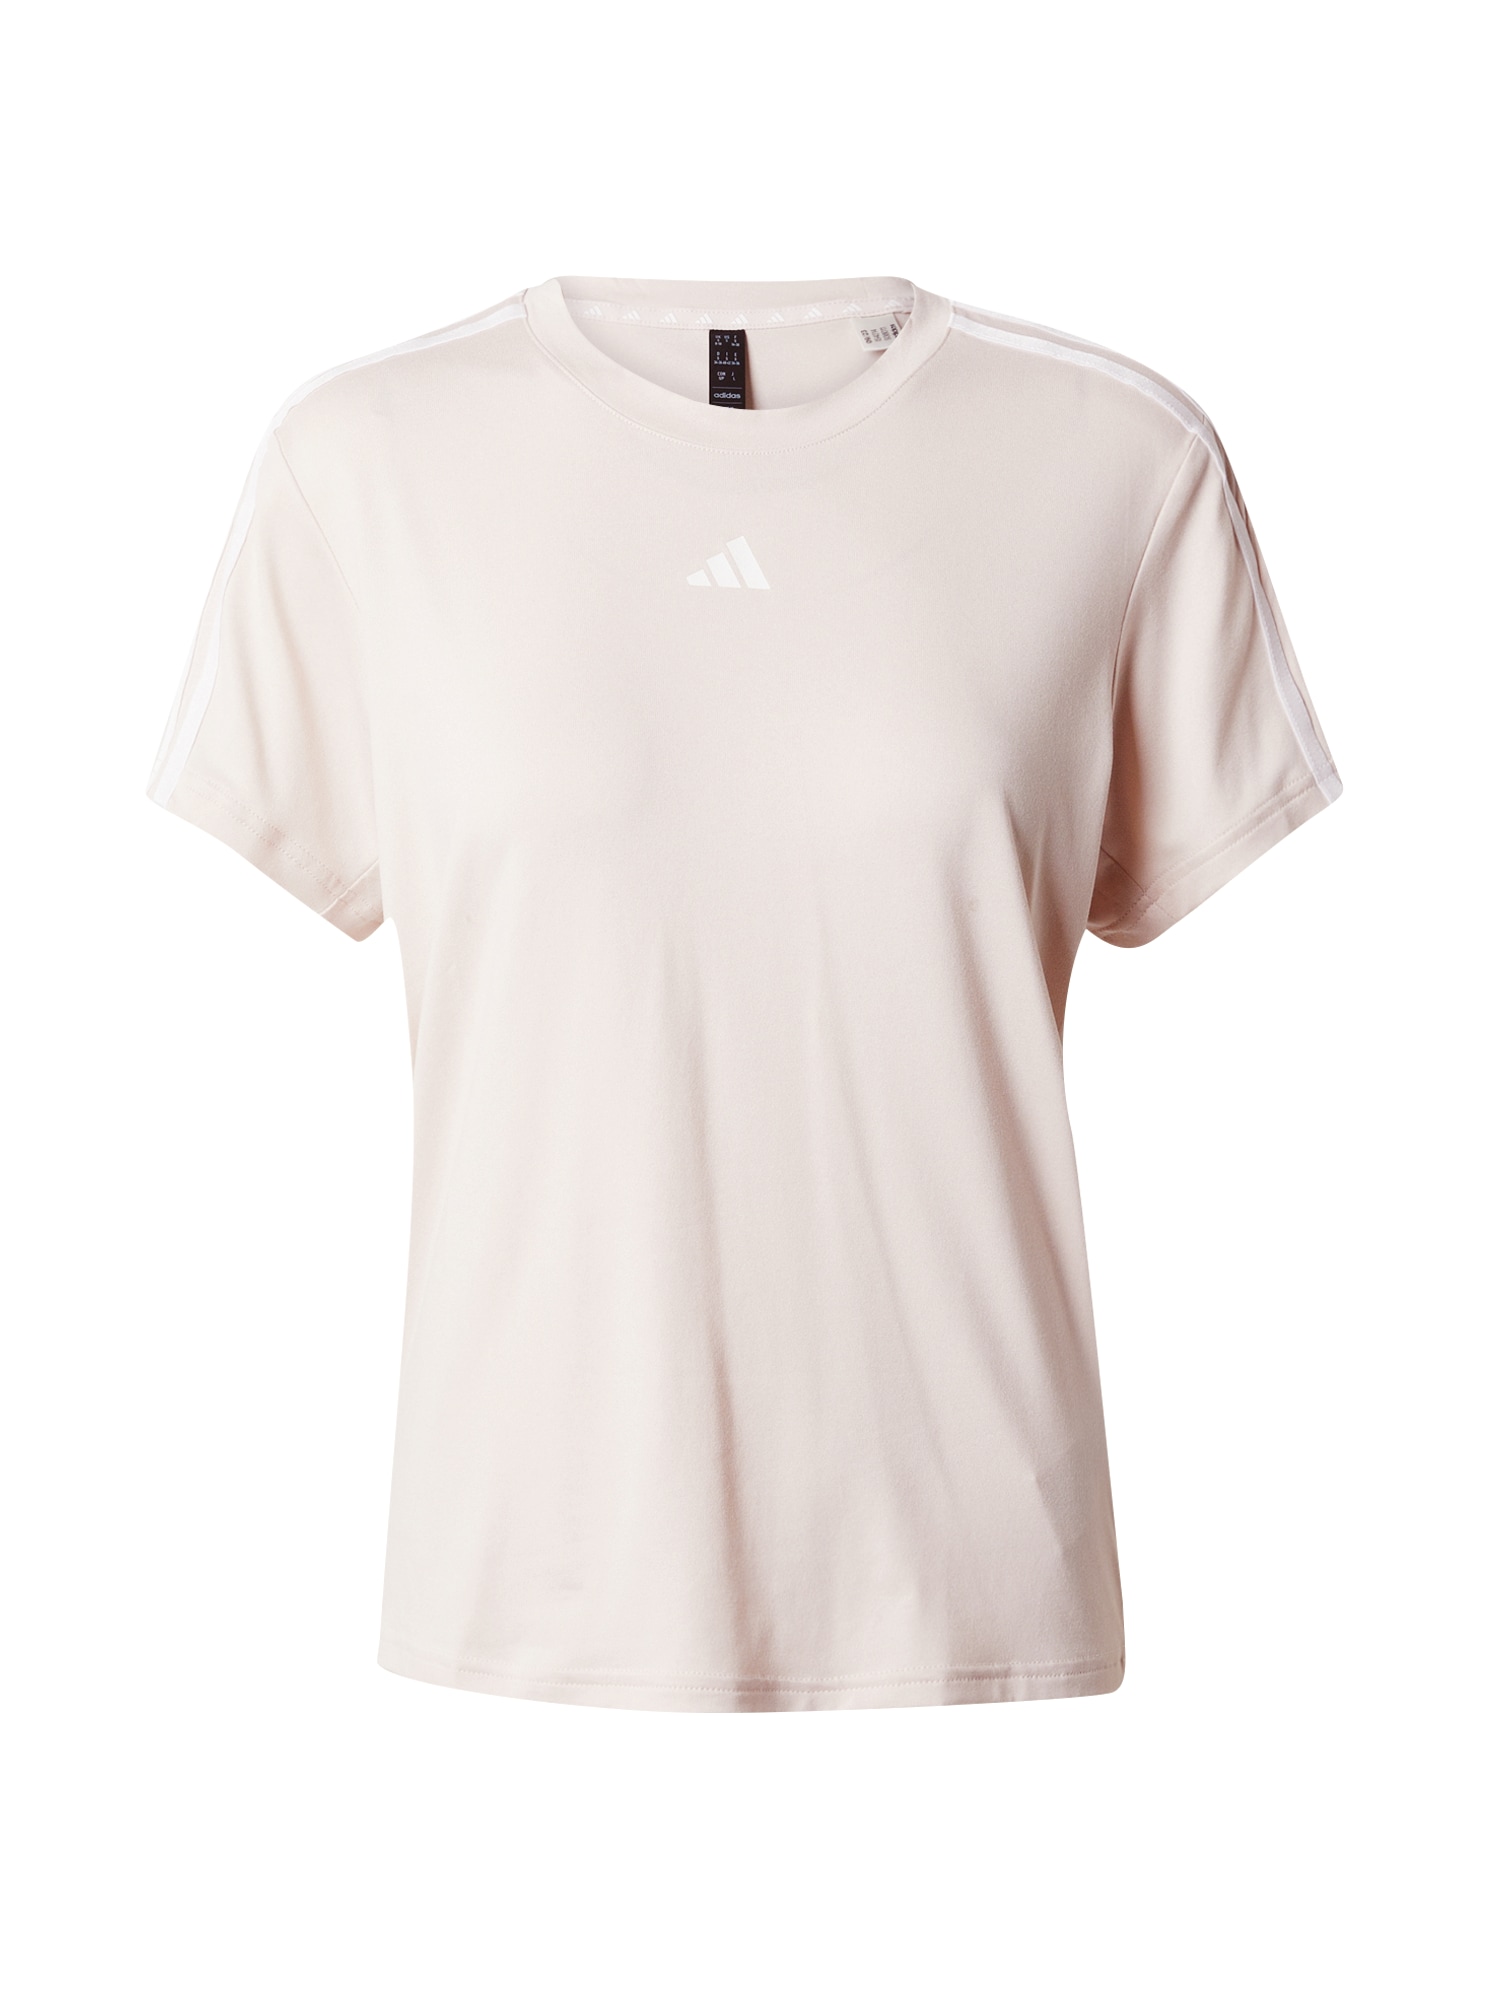 ADIDAS PERFORMANCE Sportiniai marškinėliai 'Train Essentials' nebalintos drobės spalva / balta